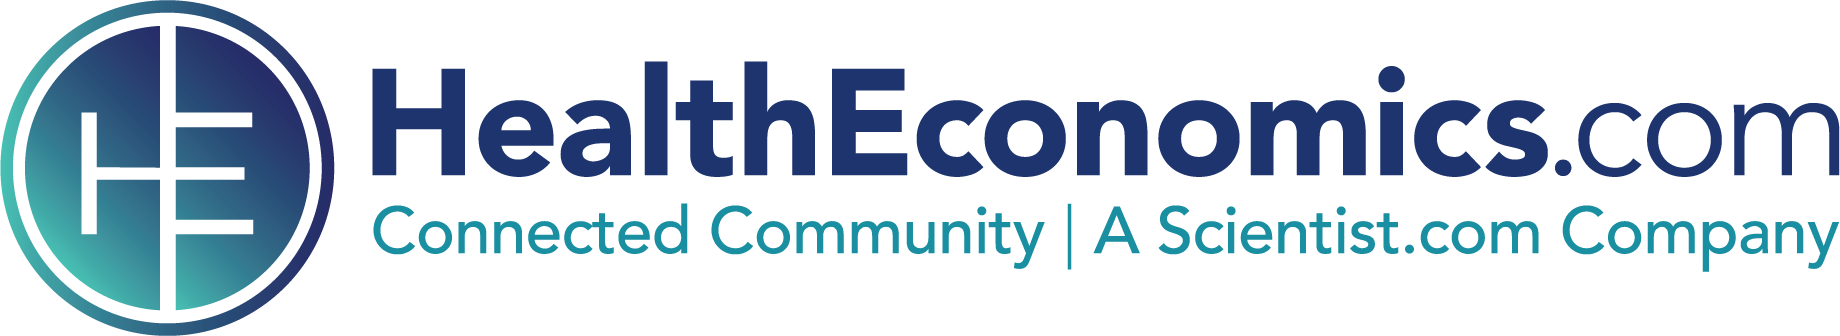 HealthEconomics.com Jobs Portal logo